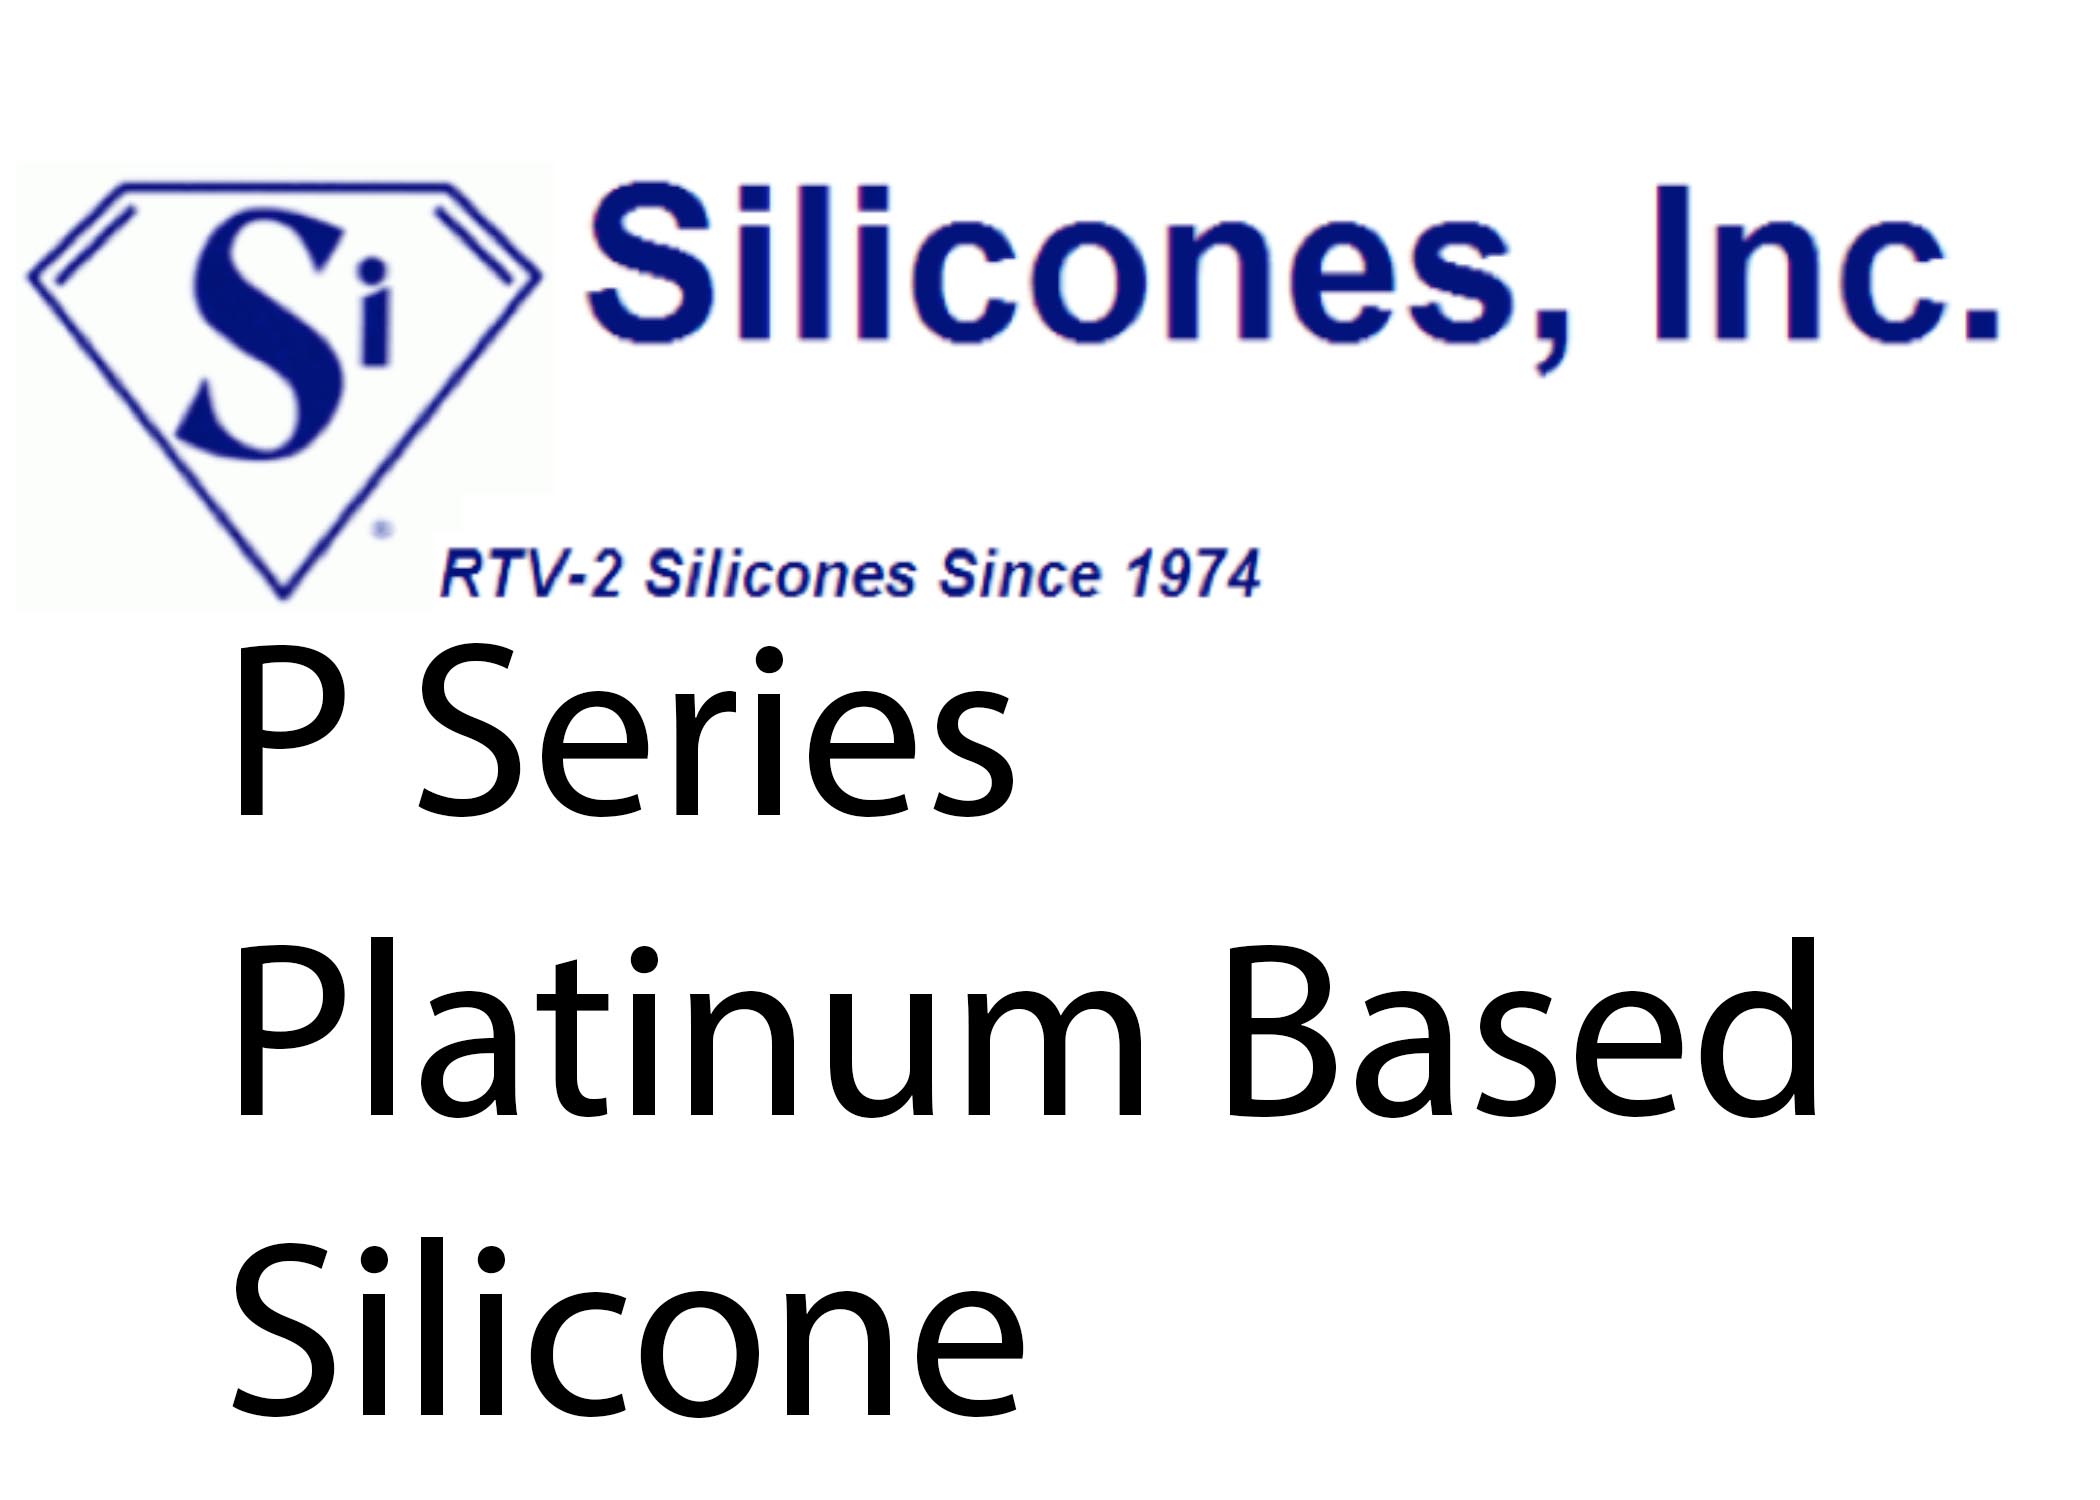 P Series Platinum Based Silicone